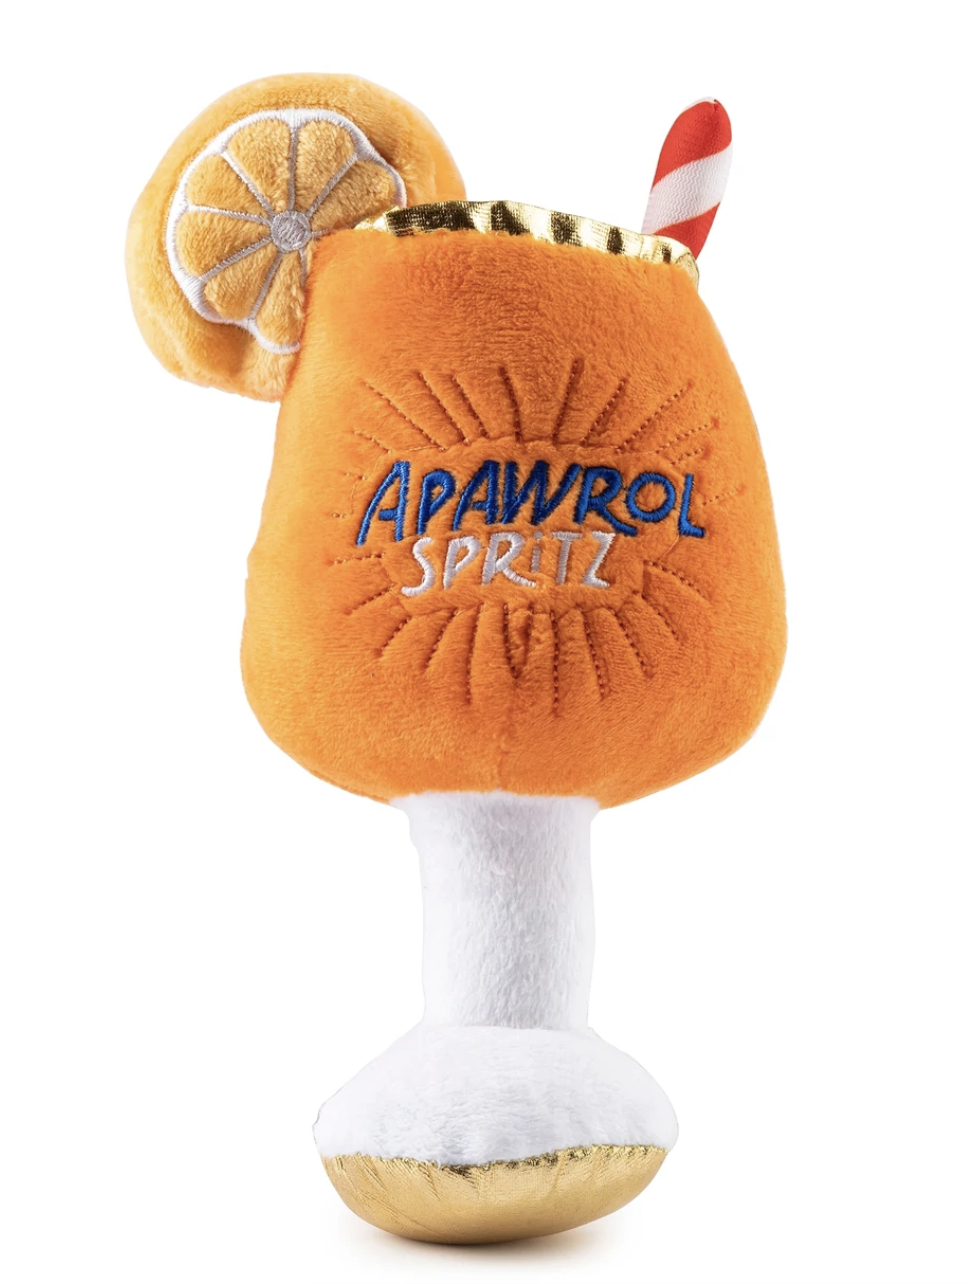 Apawrol Spritz Toy